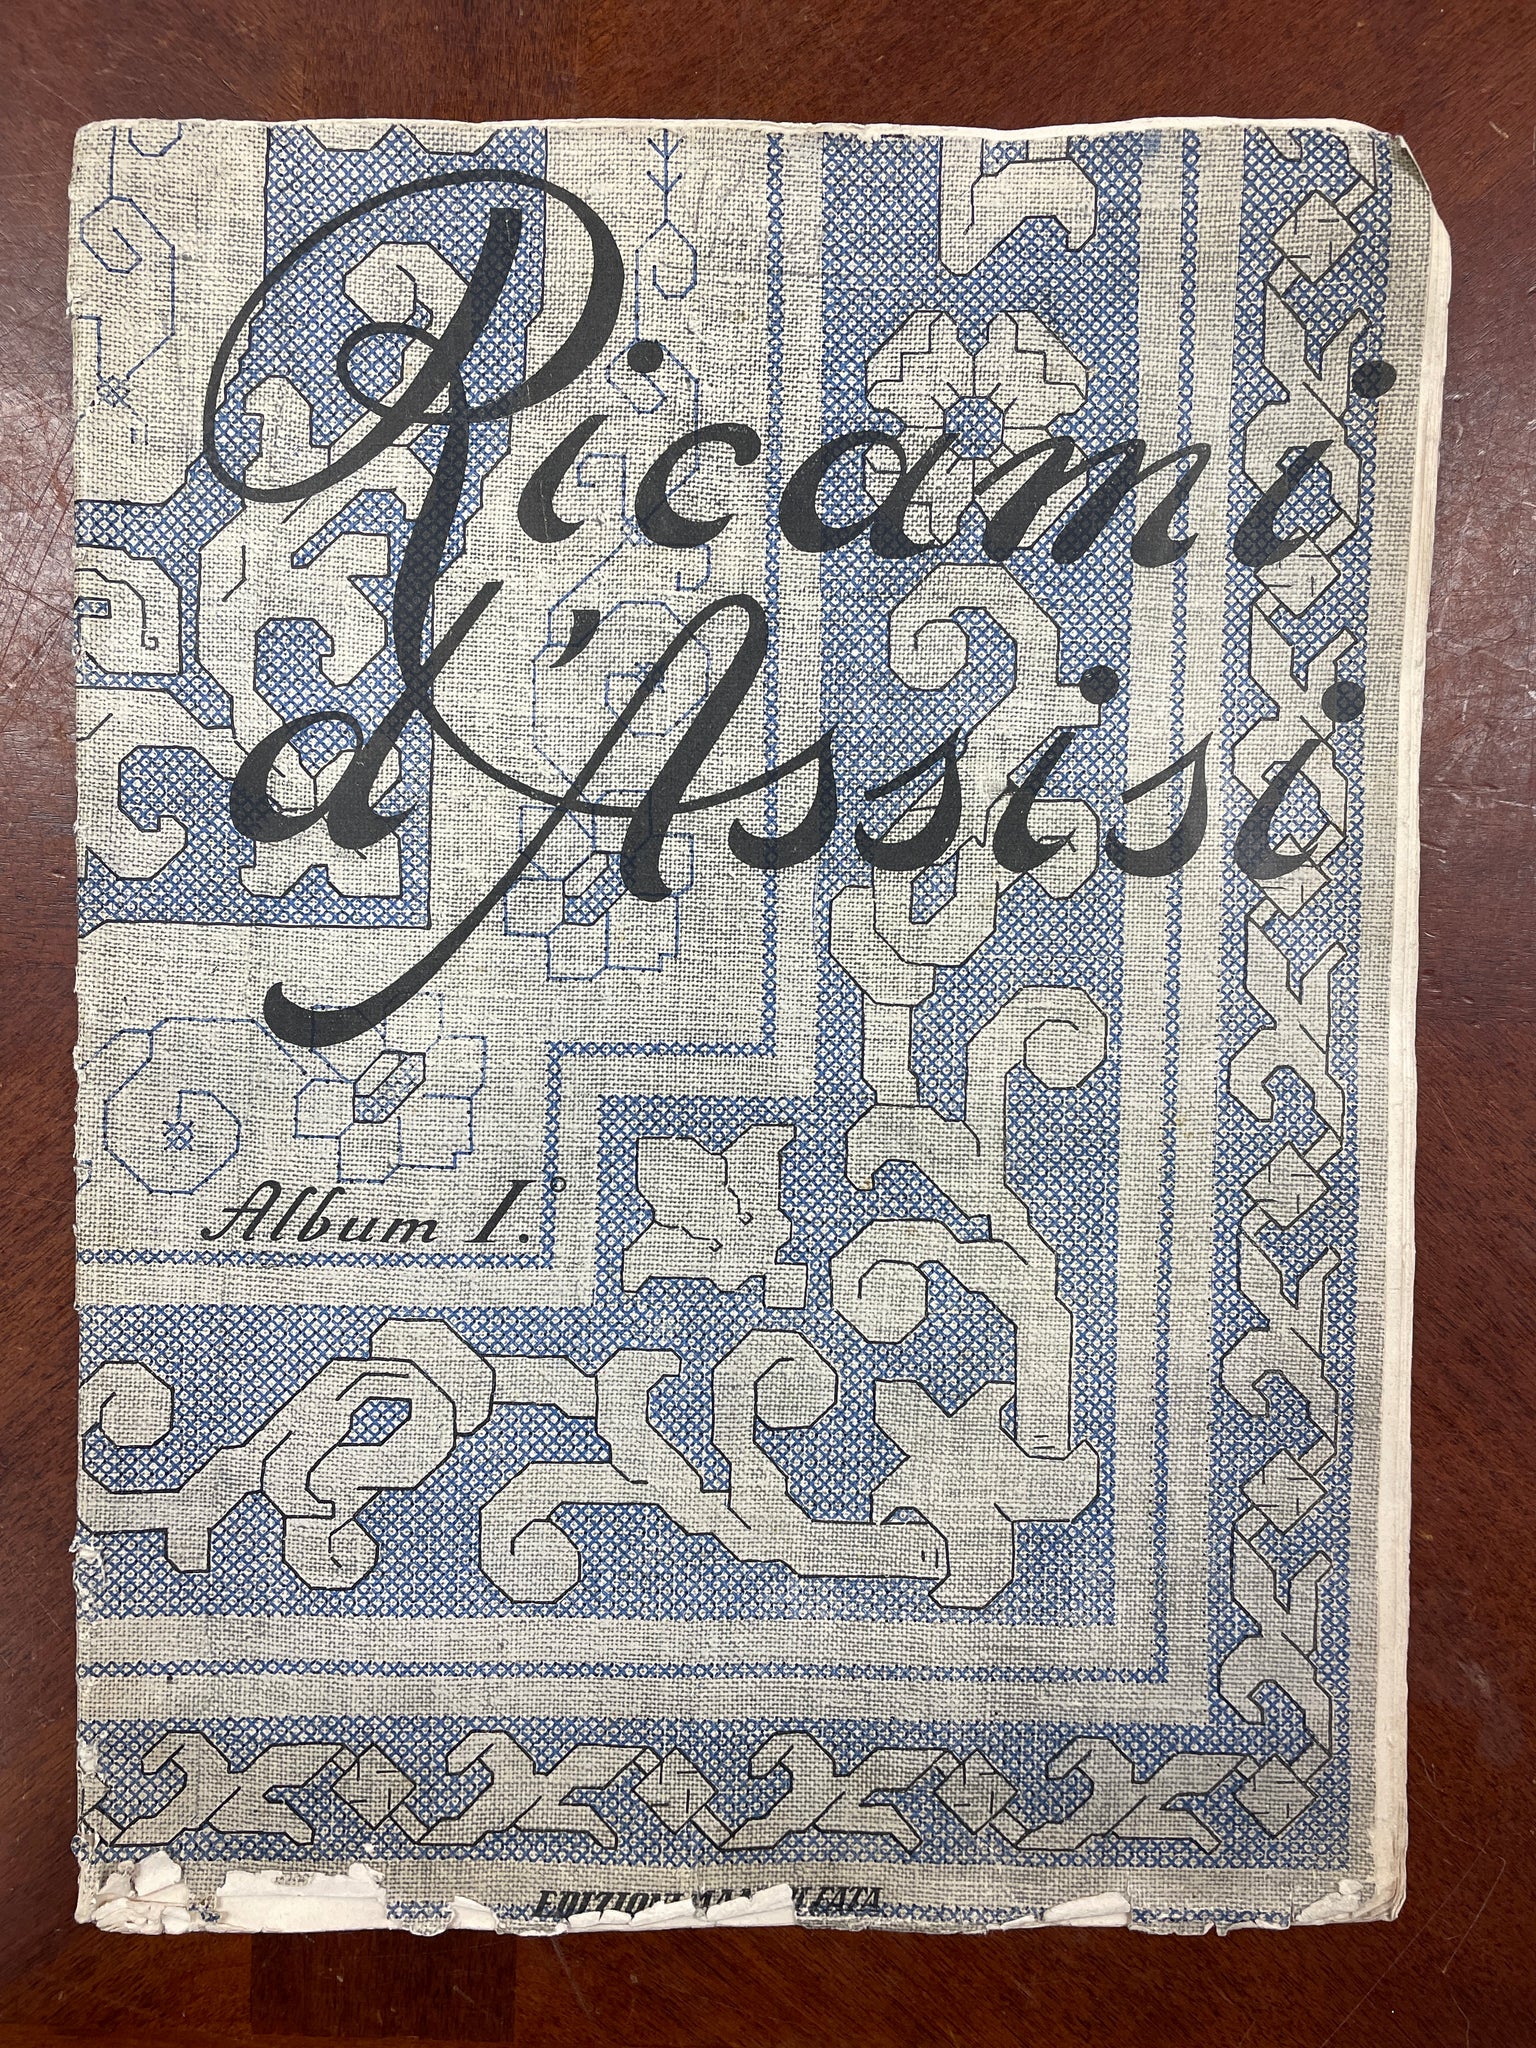 1958 Embroidery Book - Ricami d'Assis Album I